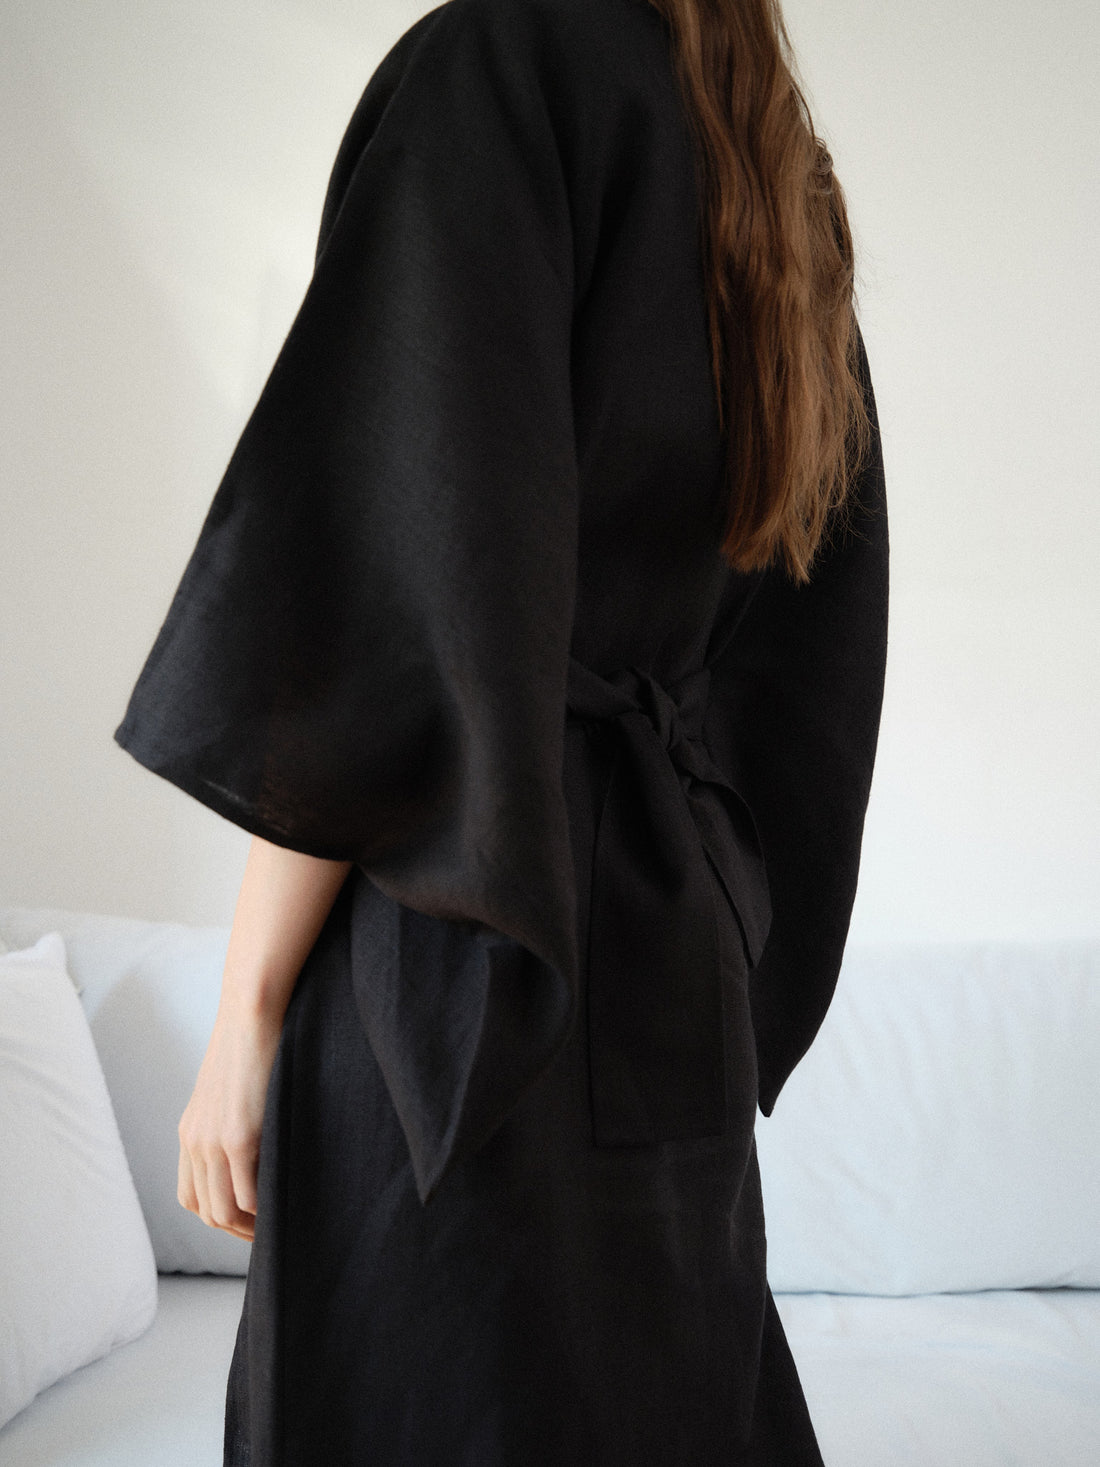 ŁYKO x PURO Kimono | Black | Women